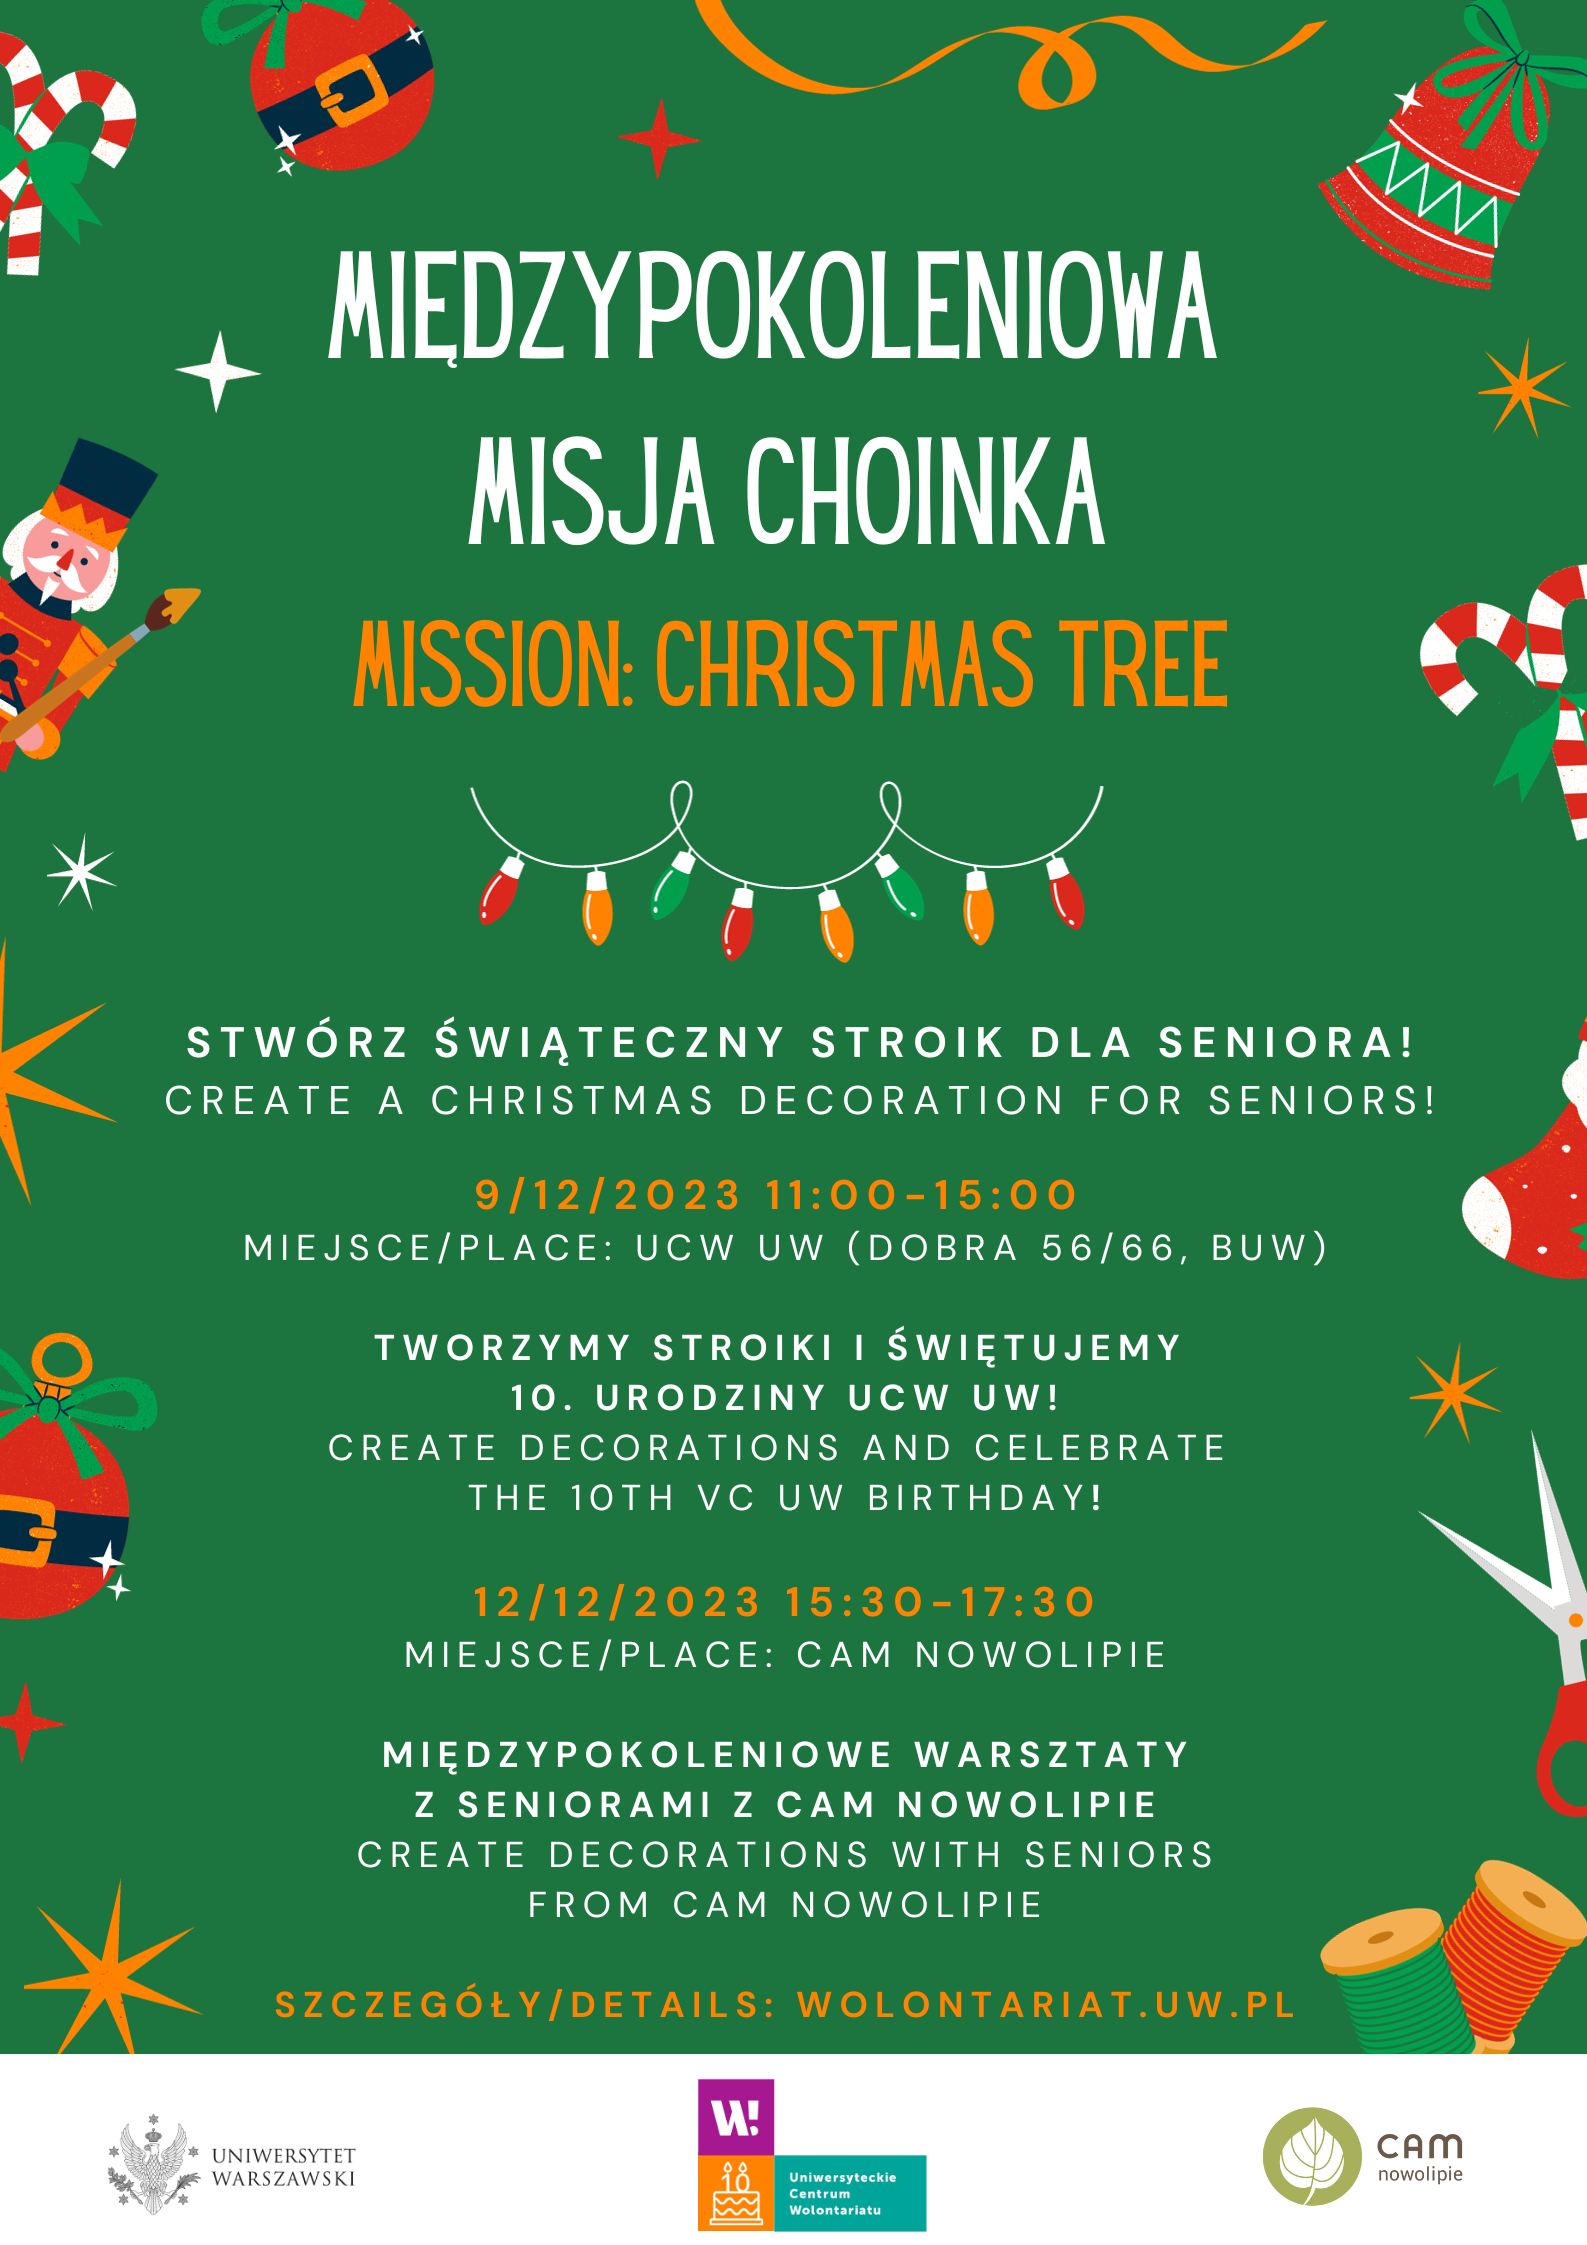 Plakat promujący Międzypokoleniową Misję Choinka